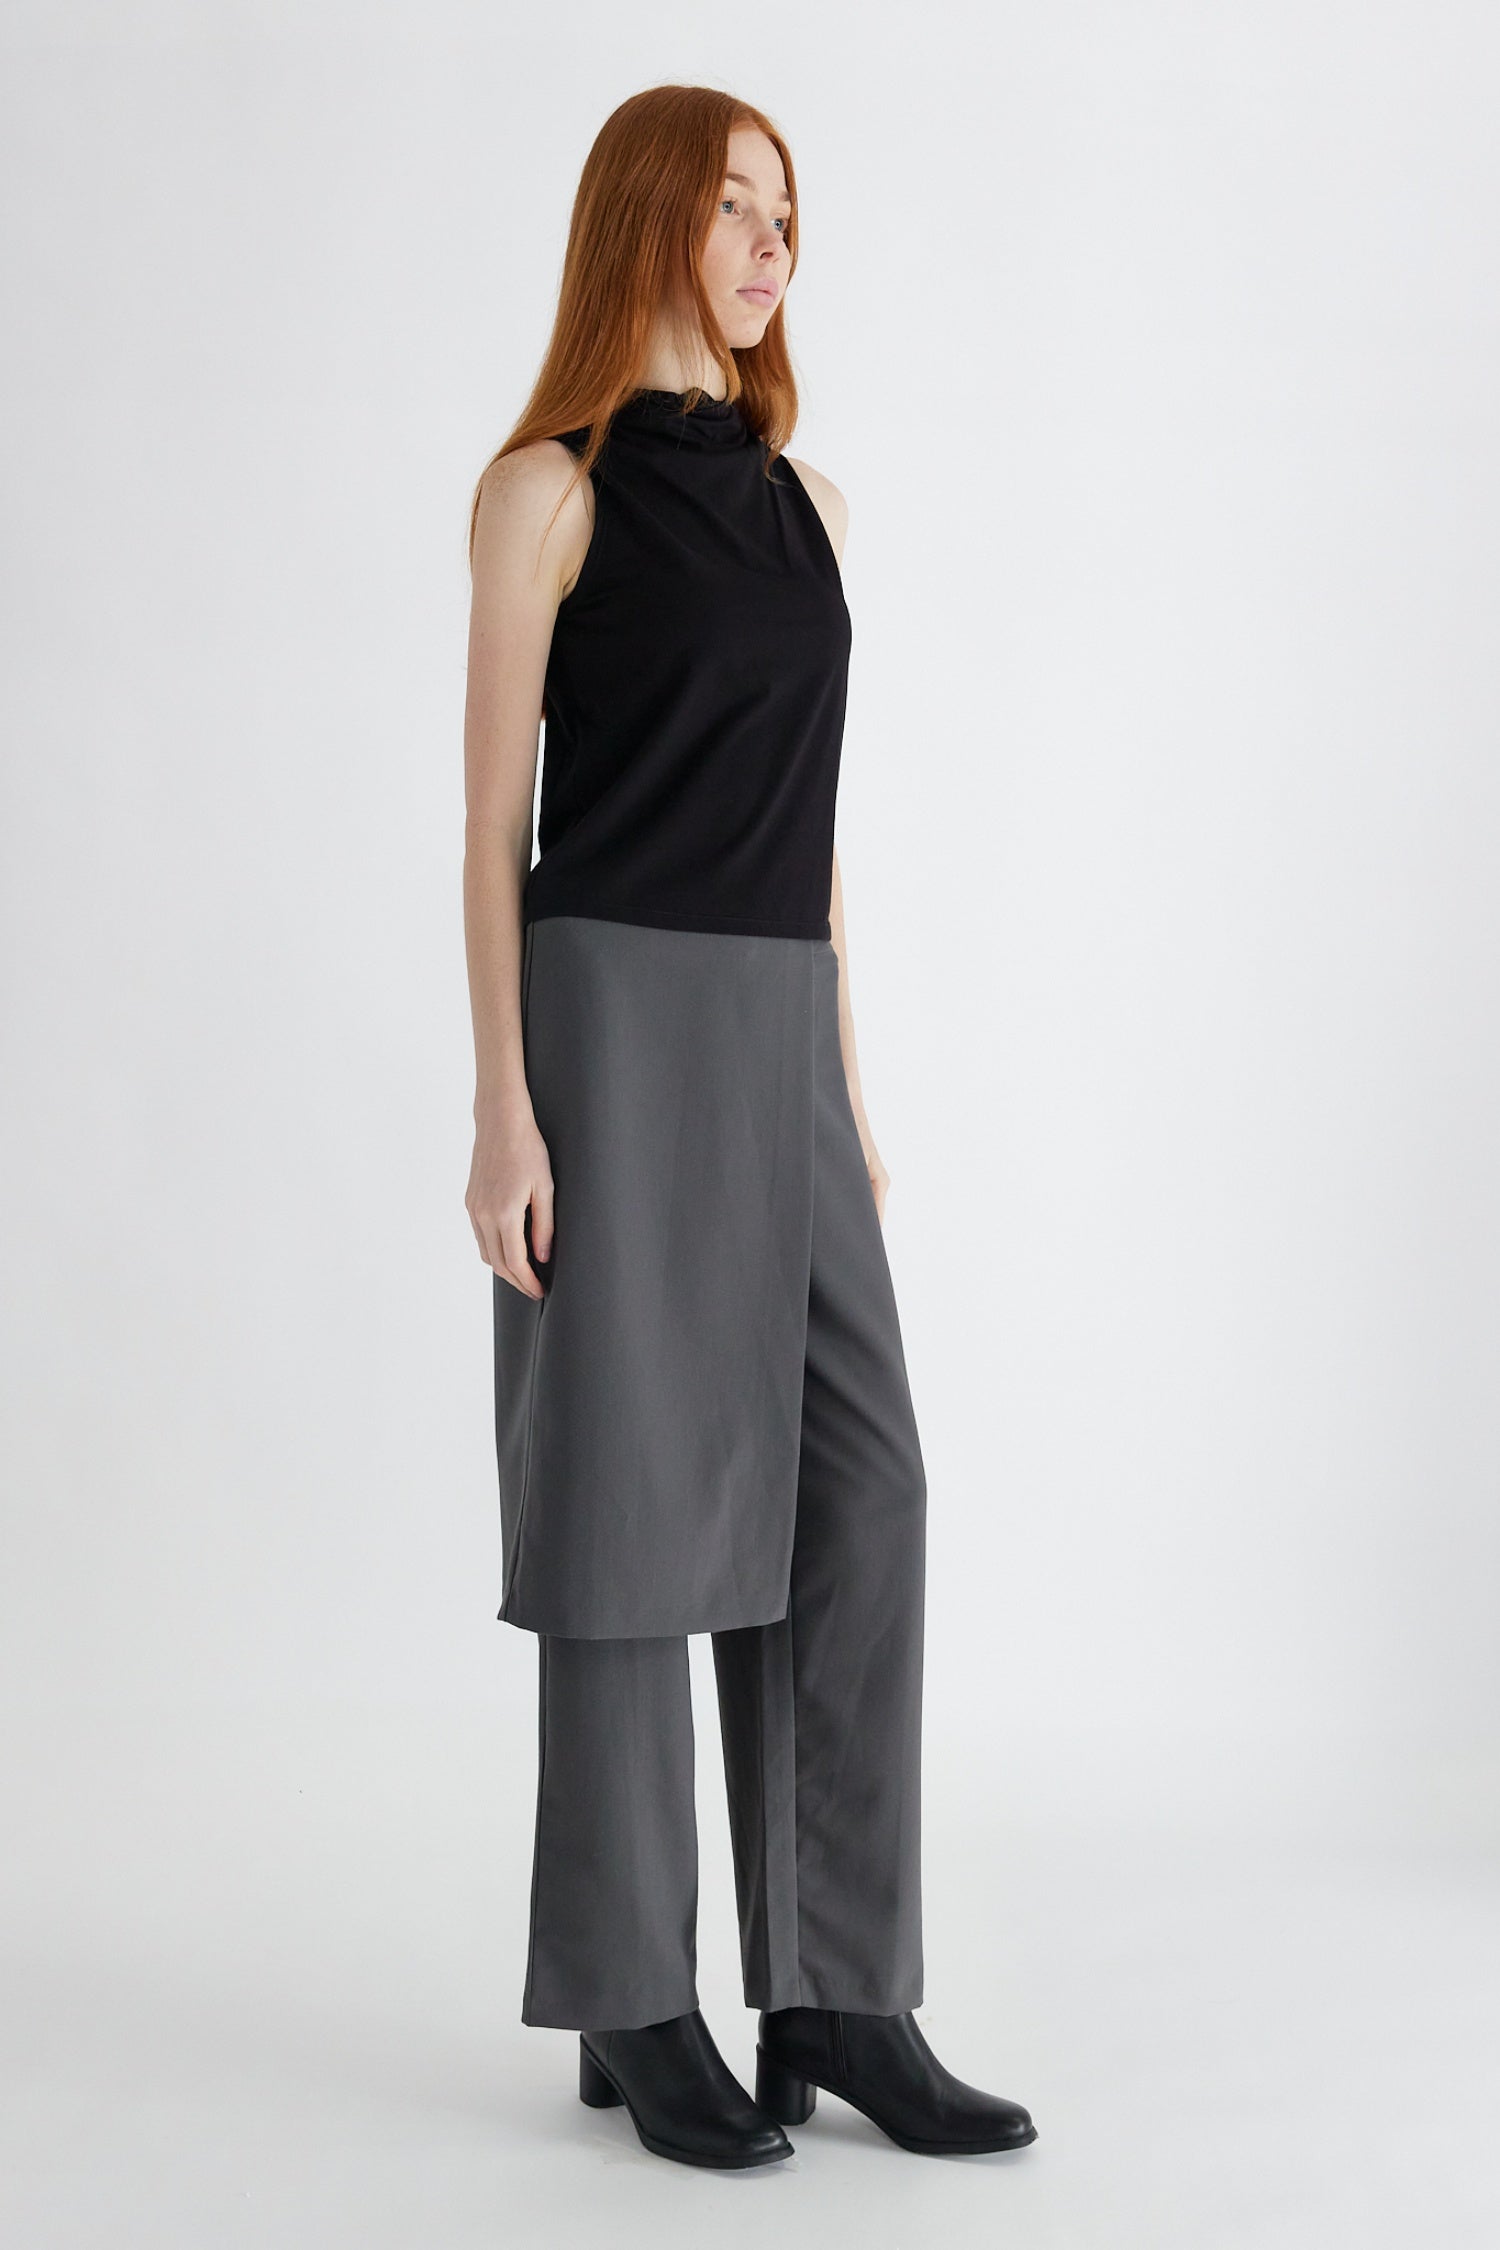 COLLUSION straight leg trouser skirt in black | ASOS